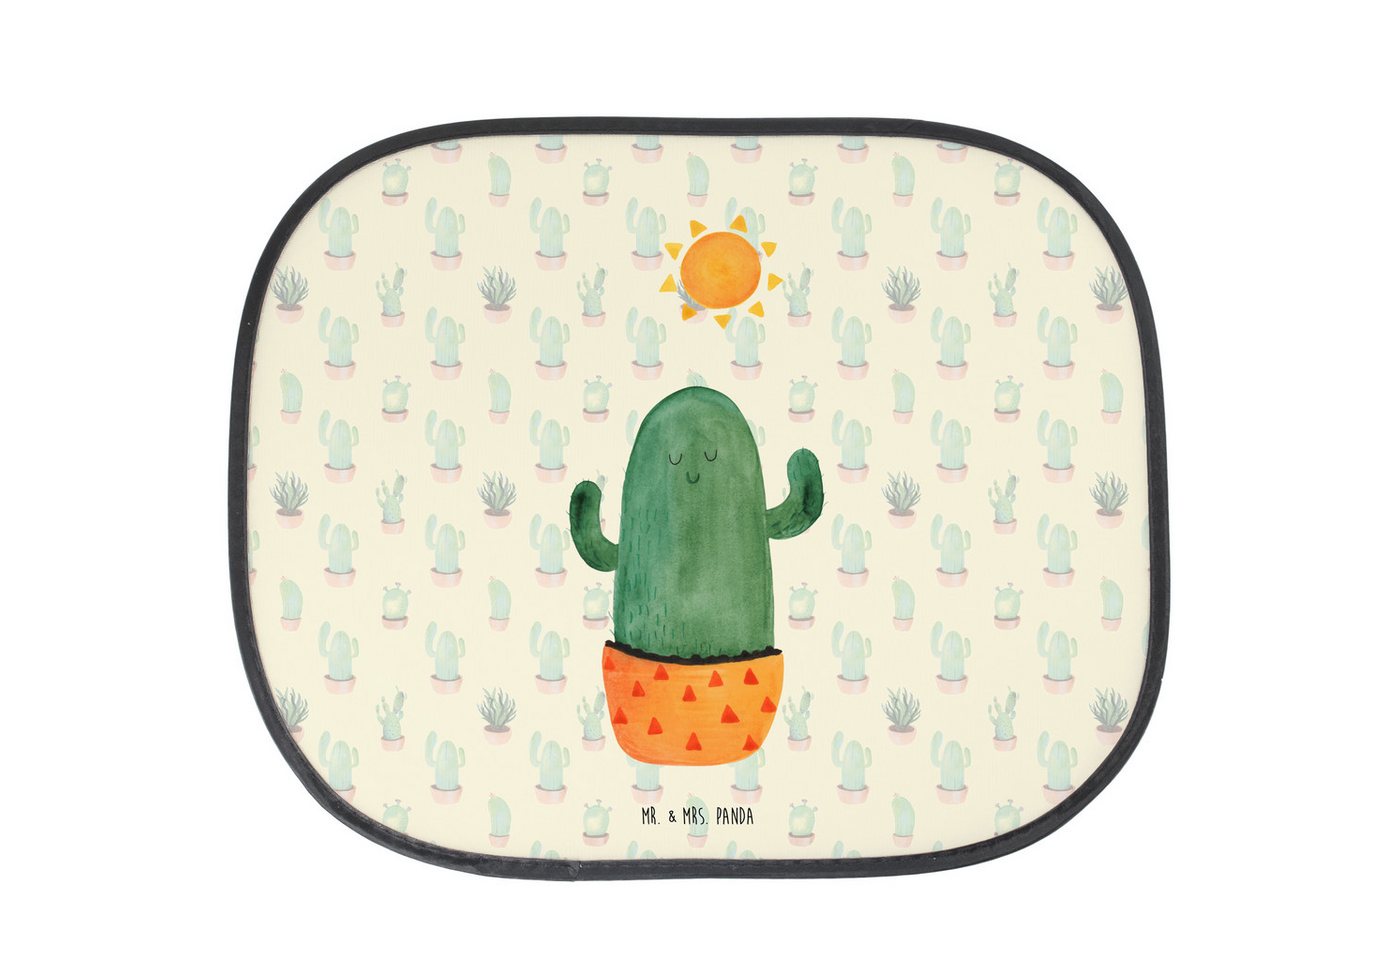 Sonnenschutz Kaktus Sonne - Kaktus Grün - Geschenk, Sonnenblende, glücklich, Kakte, Mr. & Mrs. Panda, Seidenmatt, Einzigartige Motive von Mr. & Mrs. Panda